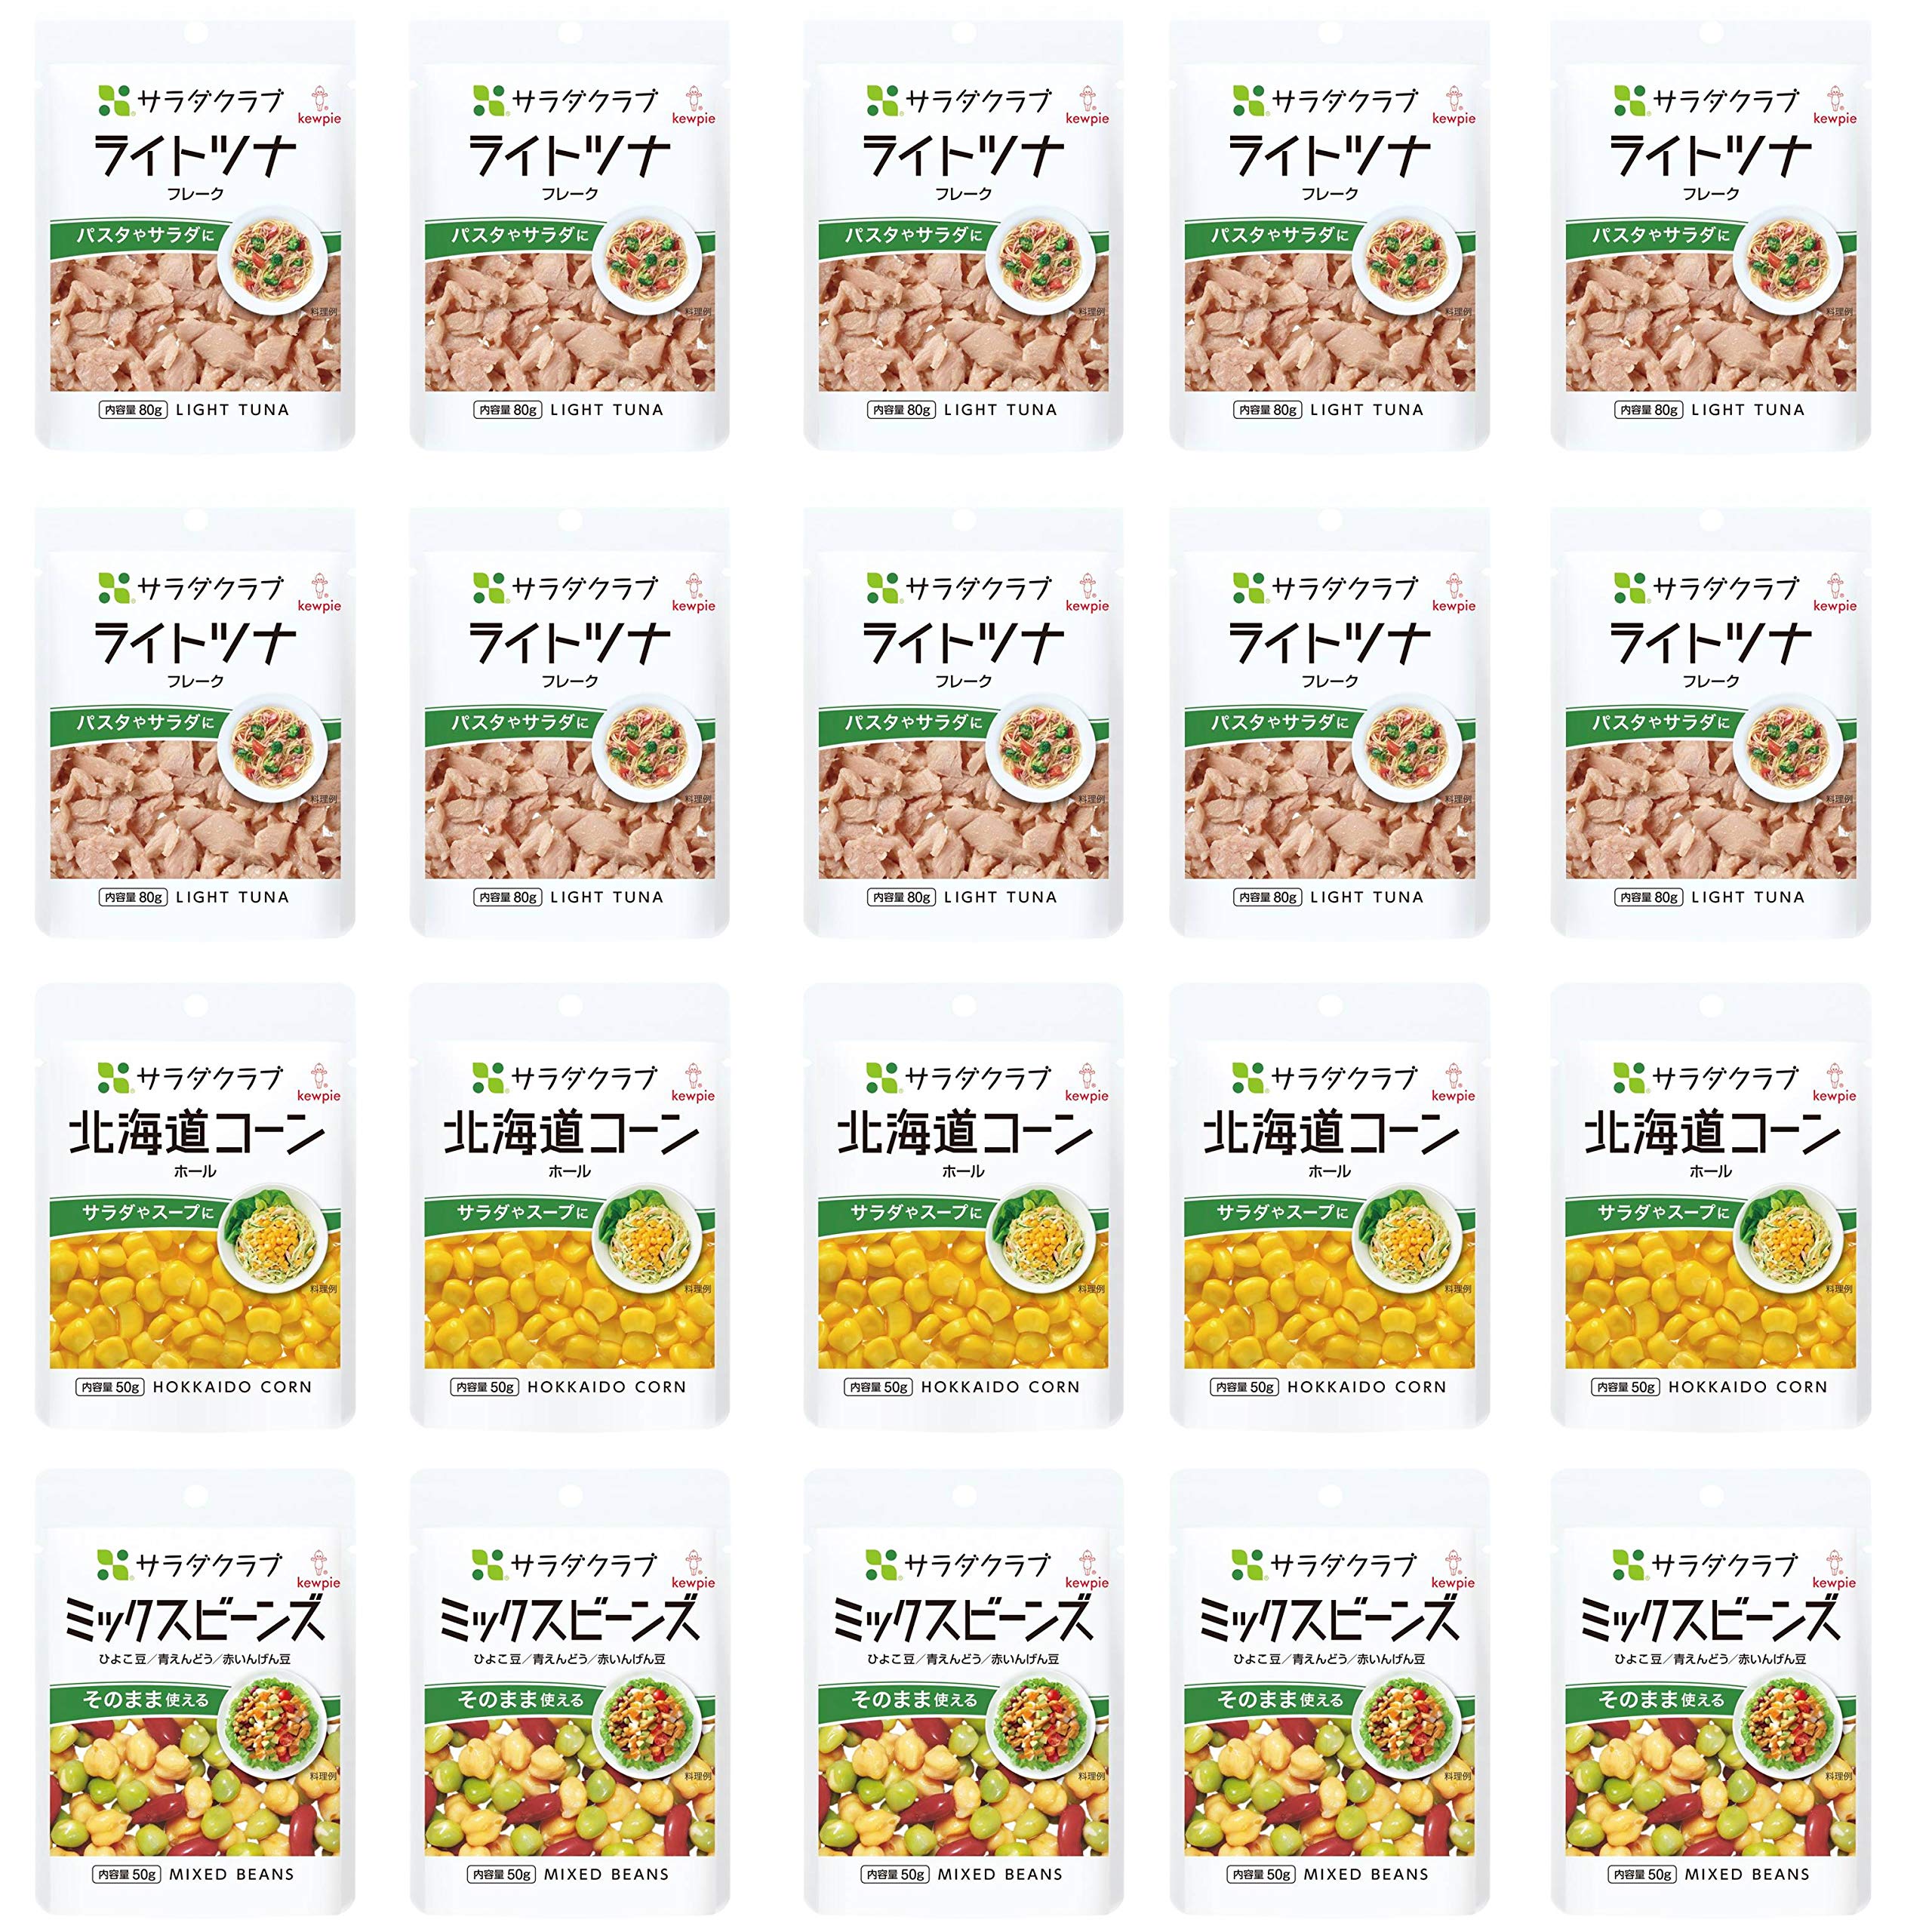 【】 キユーピー サラダクラブ サラダにあわせる 3種セットA(ライトツナ+北海道コーン+ミックスビーンズ)【セット買い】